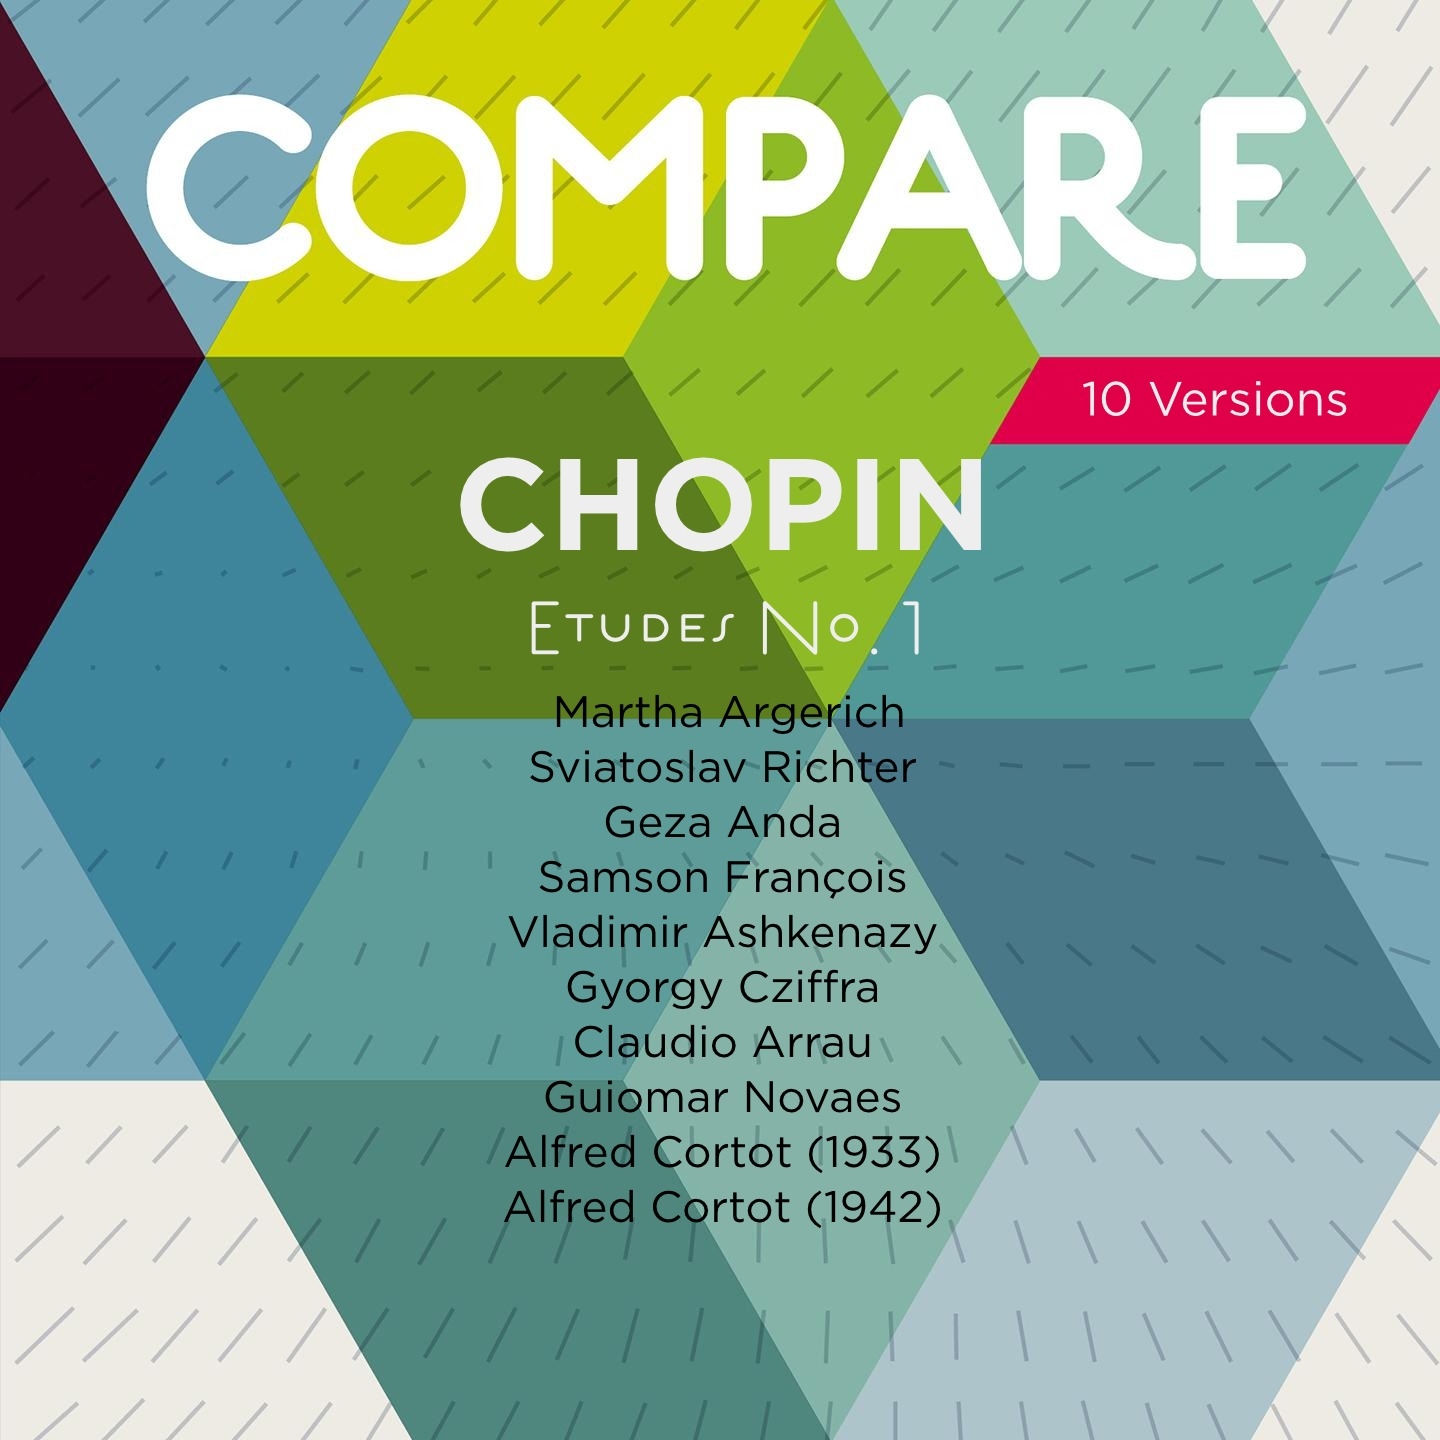 Chopin: Etudes, Op. 10 No. 1, Argerich vs. Richter vs. Anda vs. François vs. Ashkenazy vs. Cziffra vs. Arrau vs. Novaes vs. Cortot